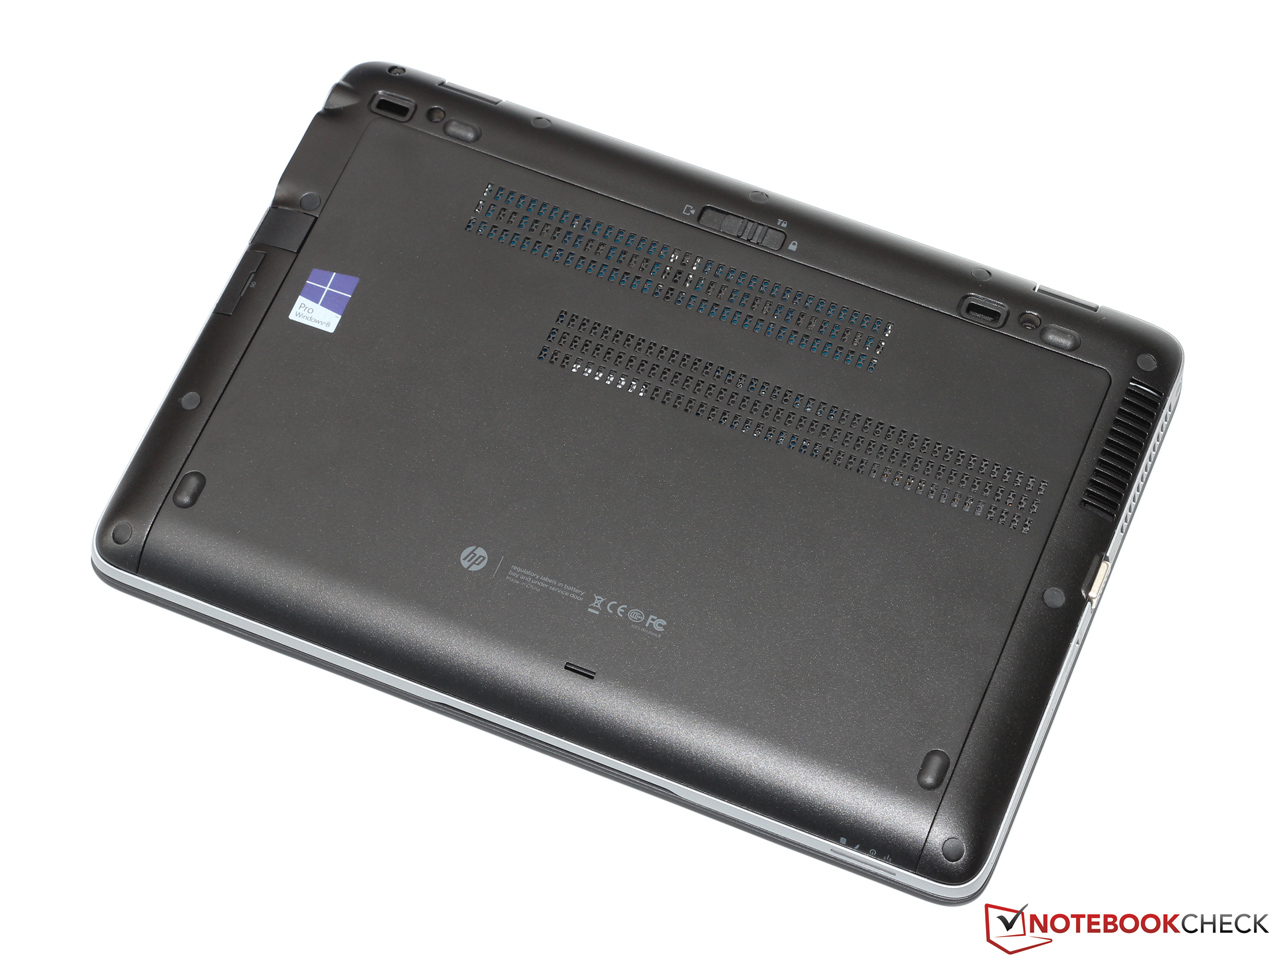 HP EliteBook 820 G2 Subnotebook Review - NotebookCheck.net Reviews